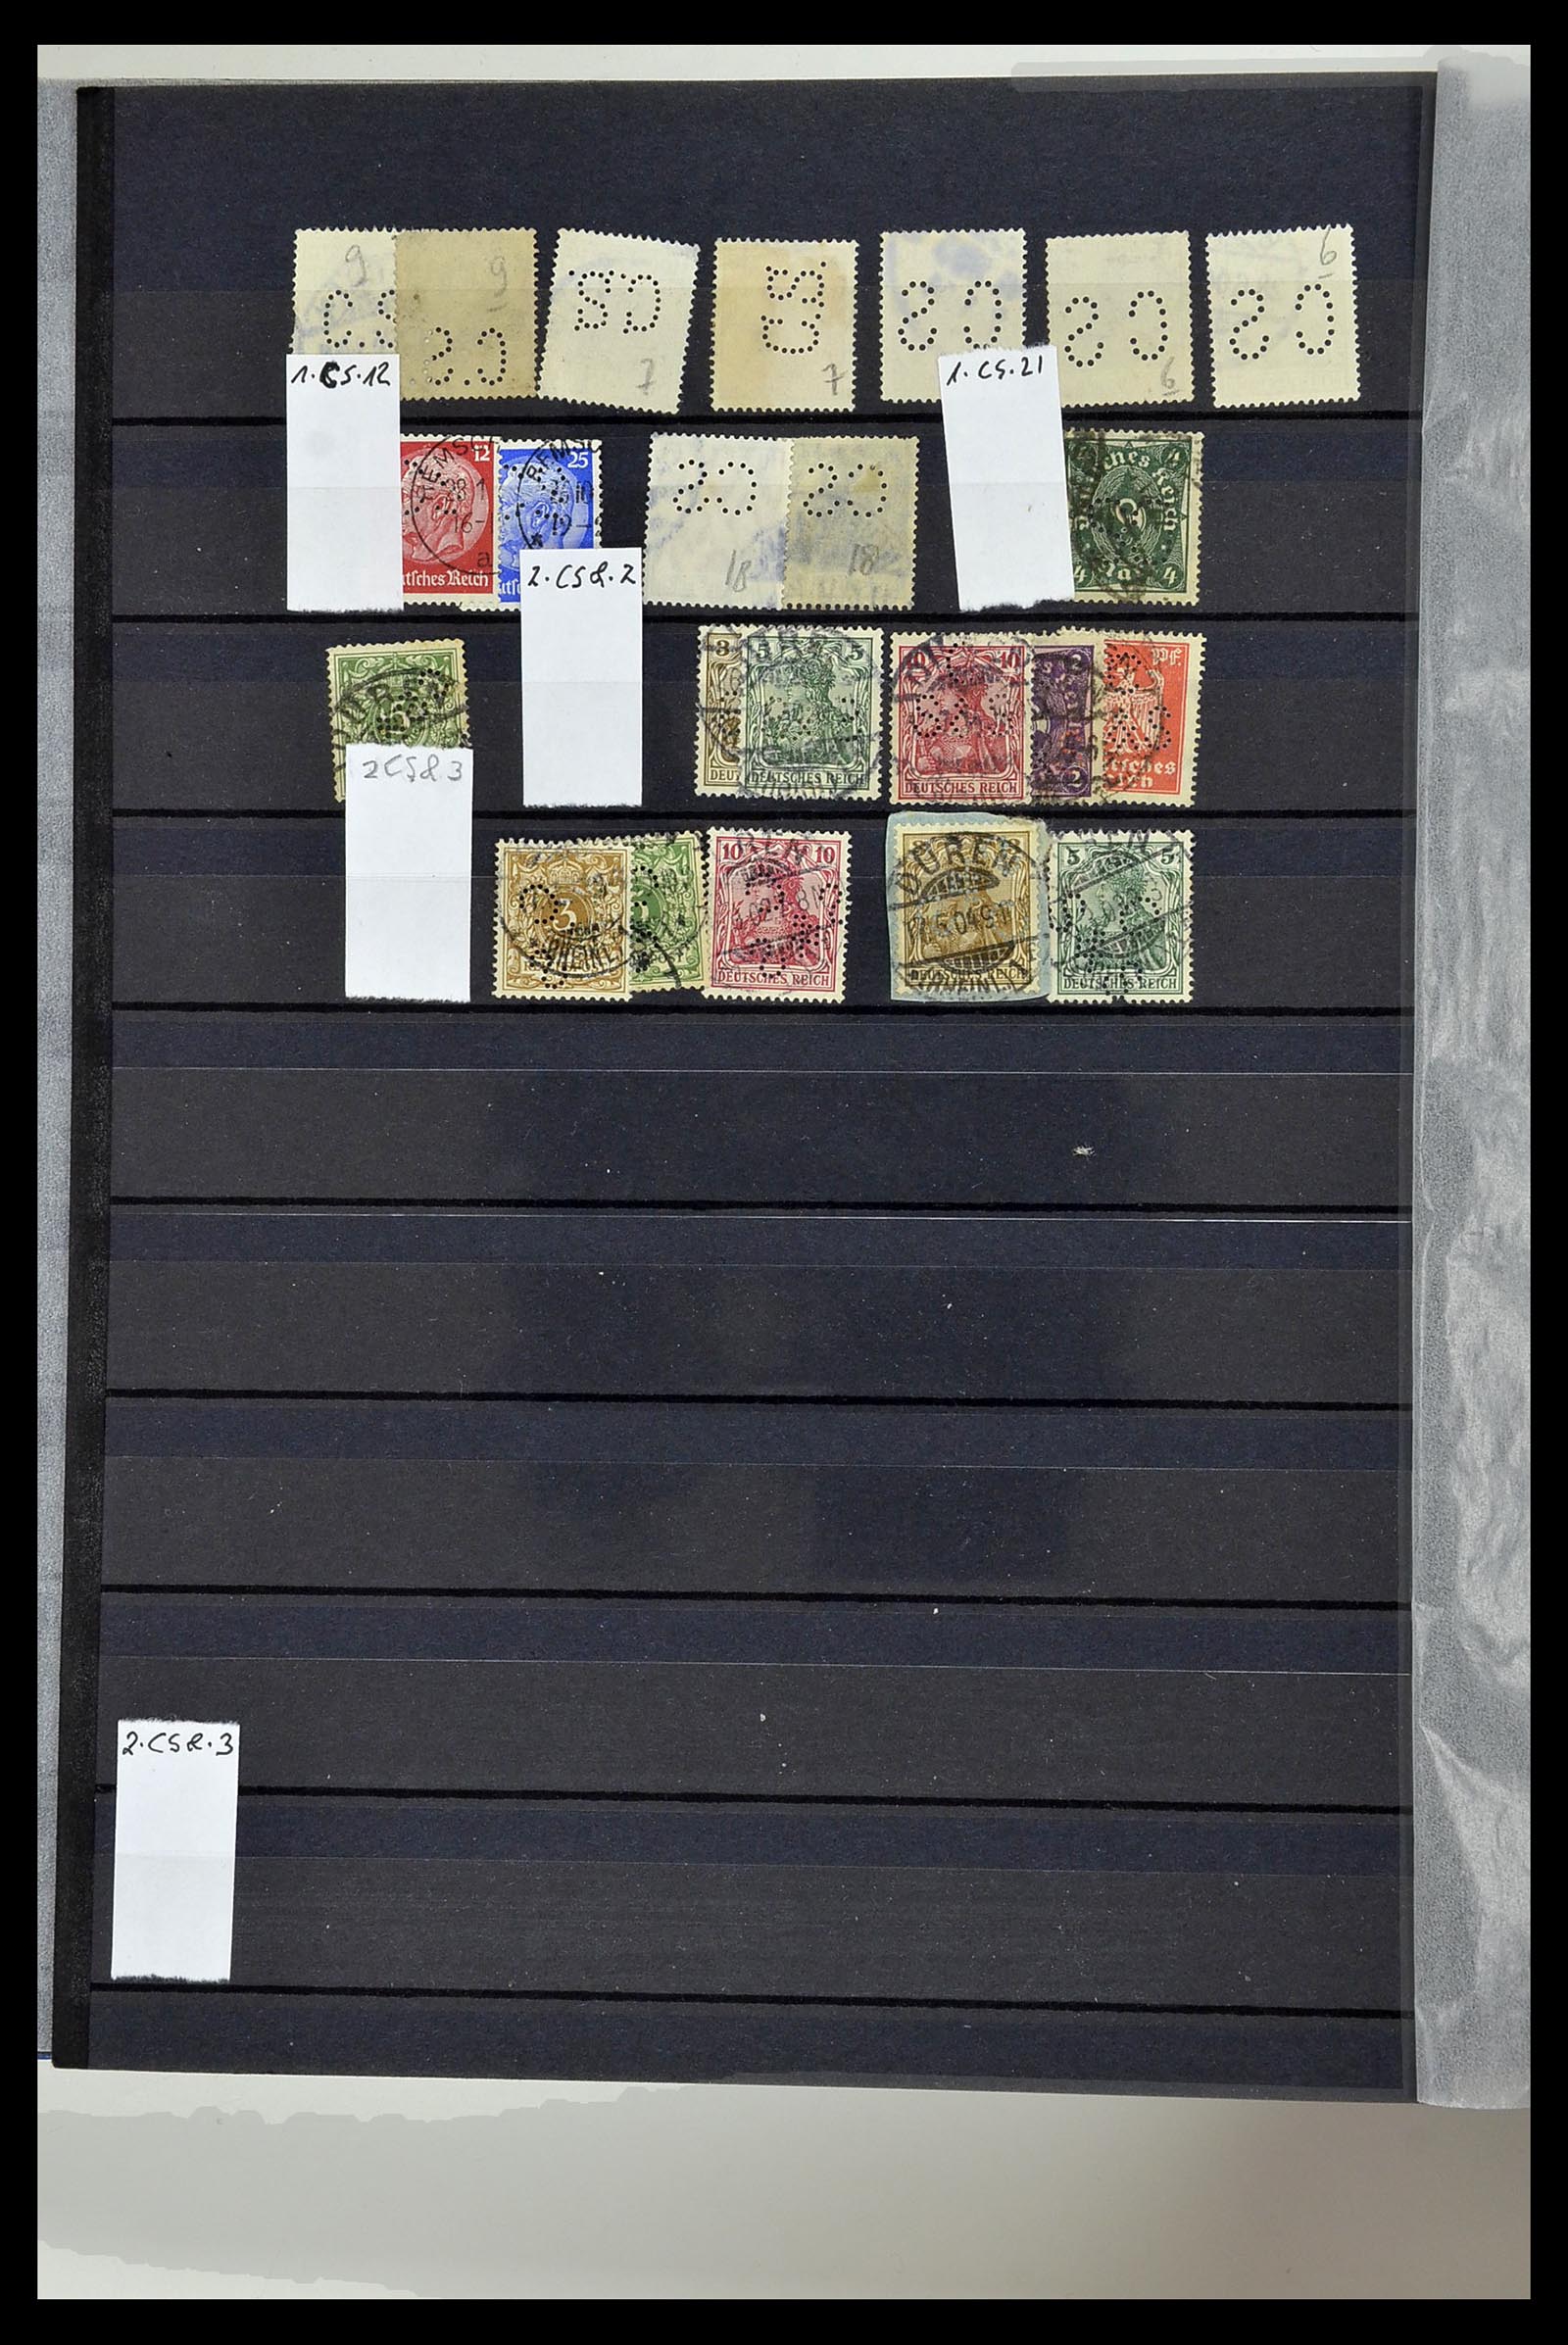 34432 088 - Stamp Collection 34432 German Reich perfins 1900-1933.